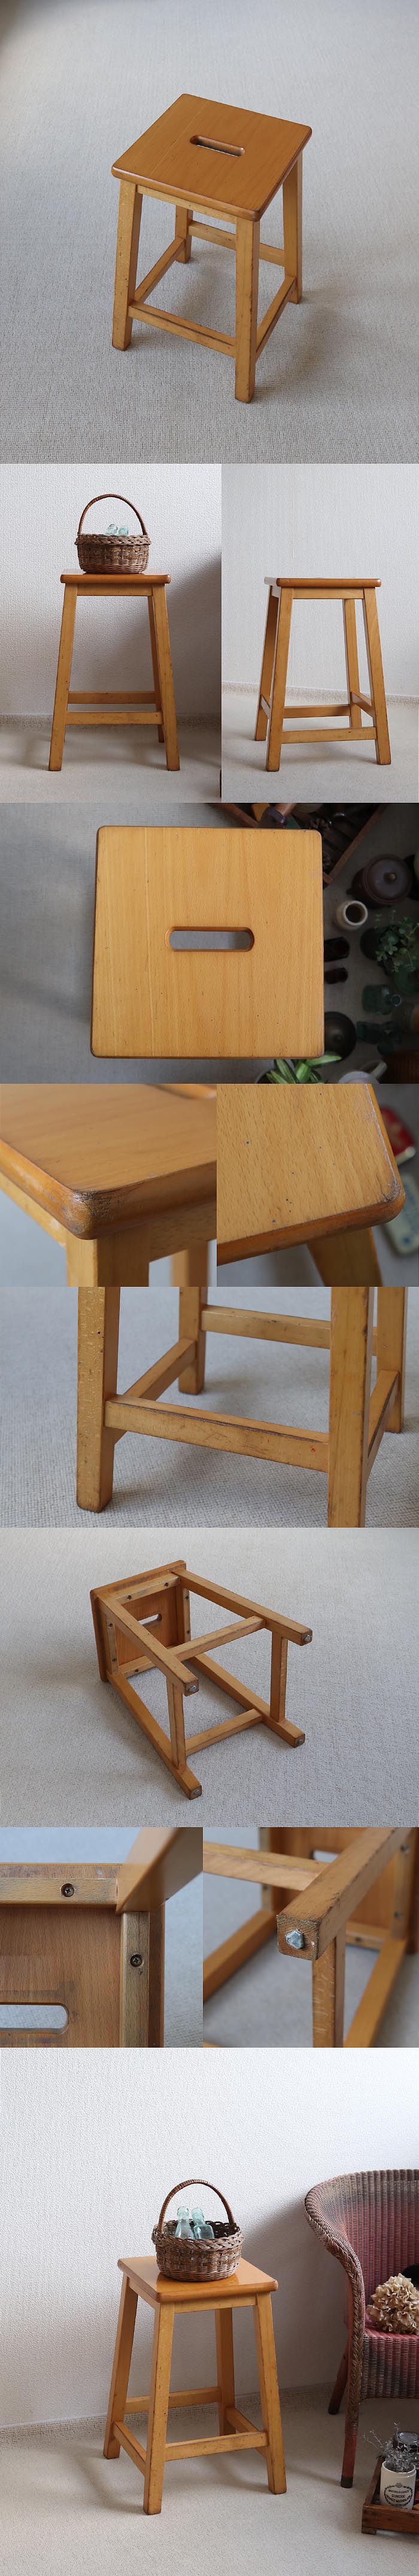 イギリス ヴィンテージスタイル ウッドスツール 椅子 カントリー アトリエ 家具「飾り台にも」T-851